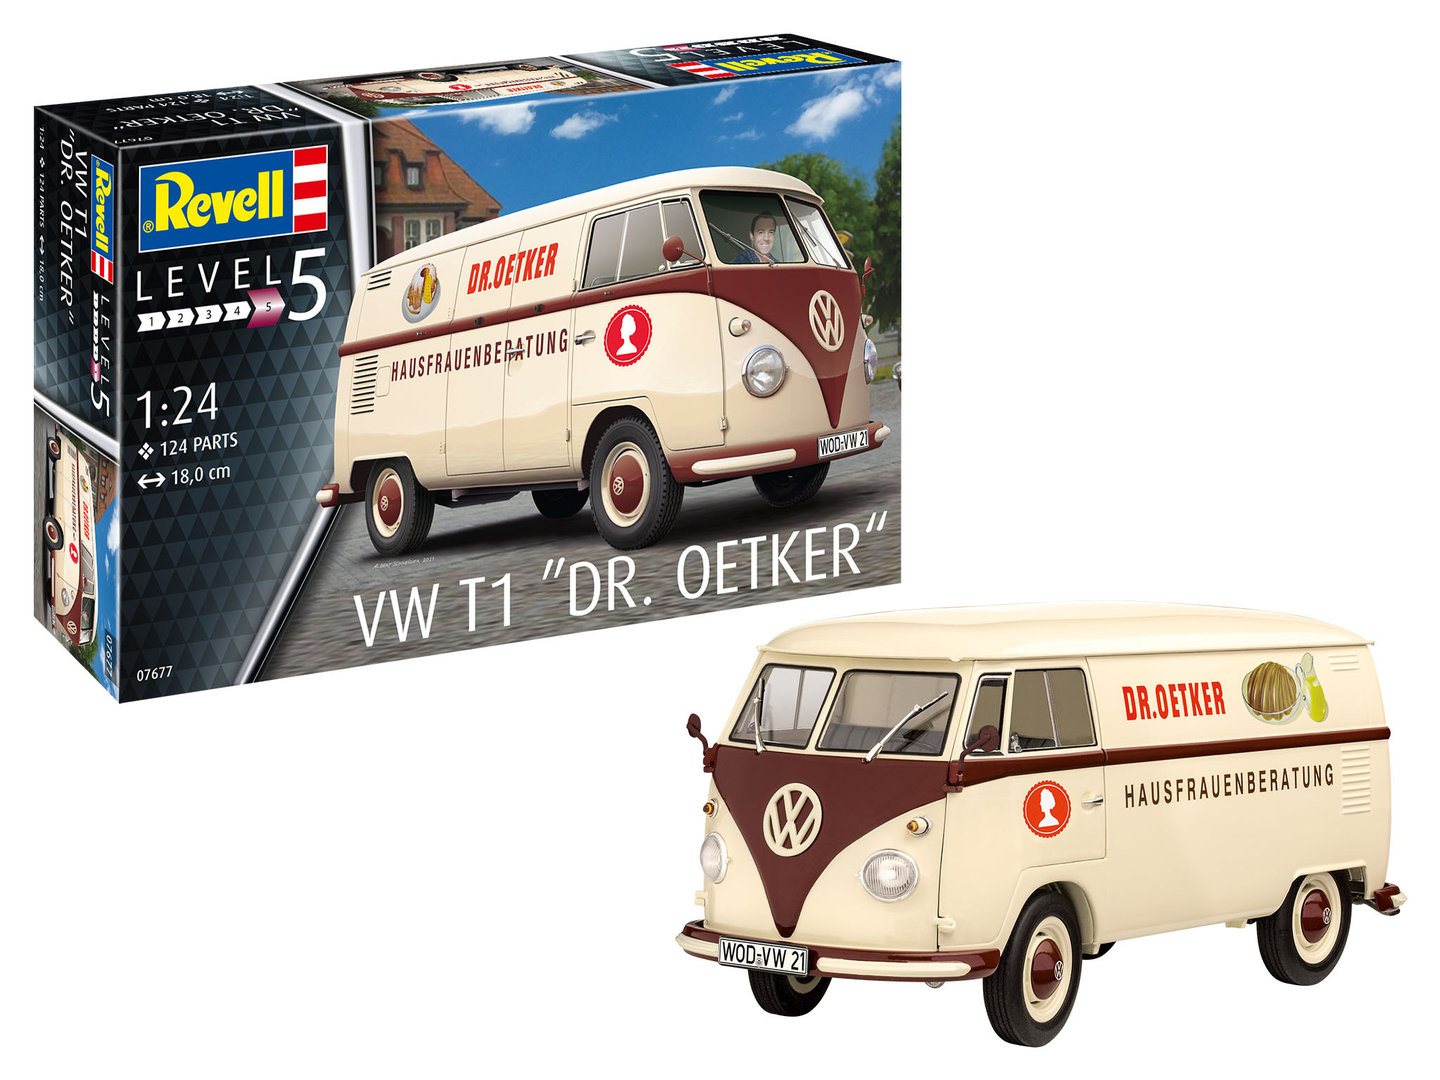 Revell 07677 Volkswagen T1 Delivery Van Dr. Oetker - 1:24